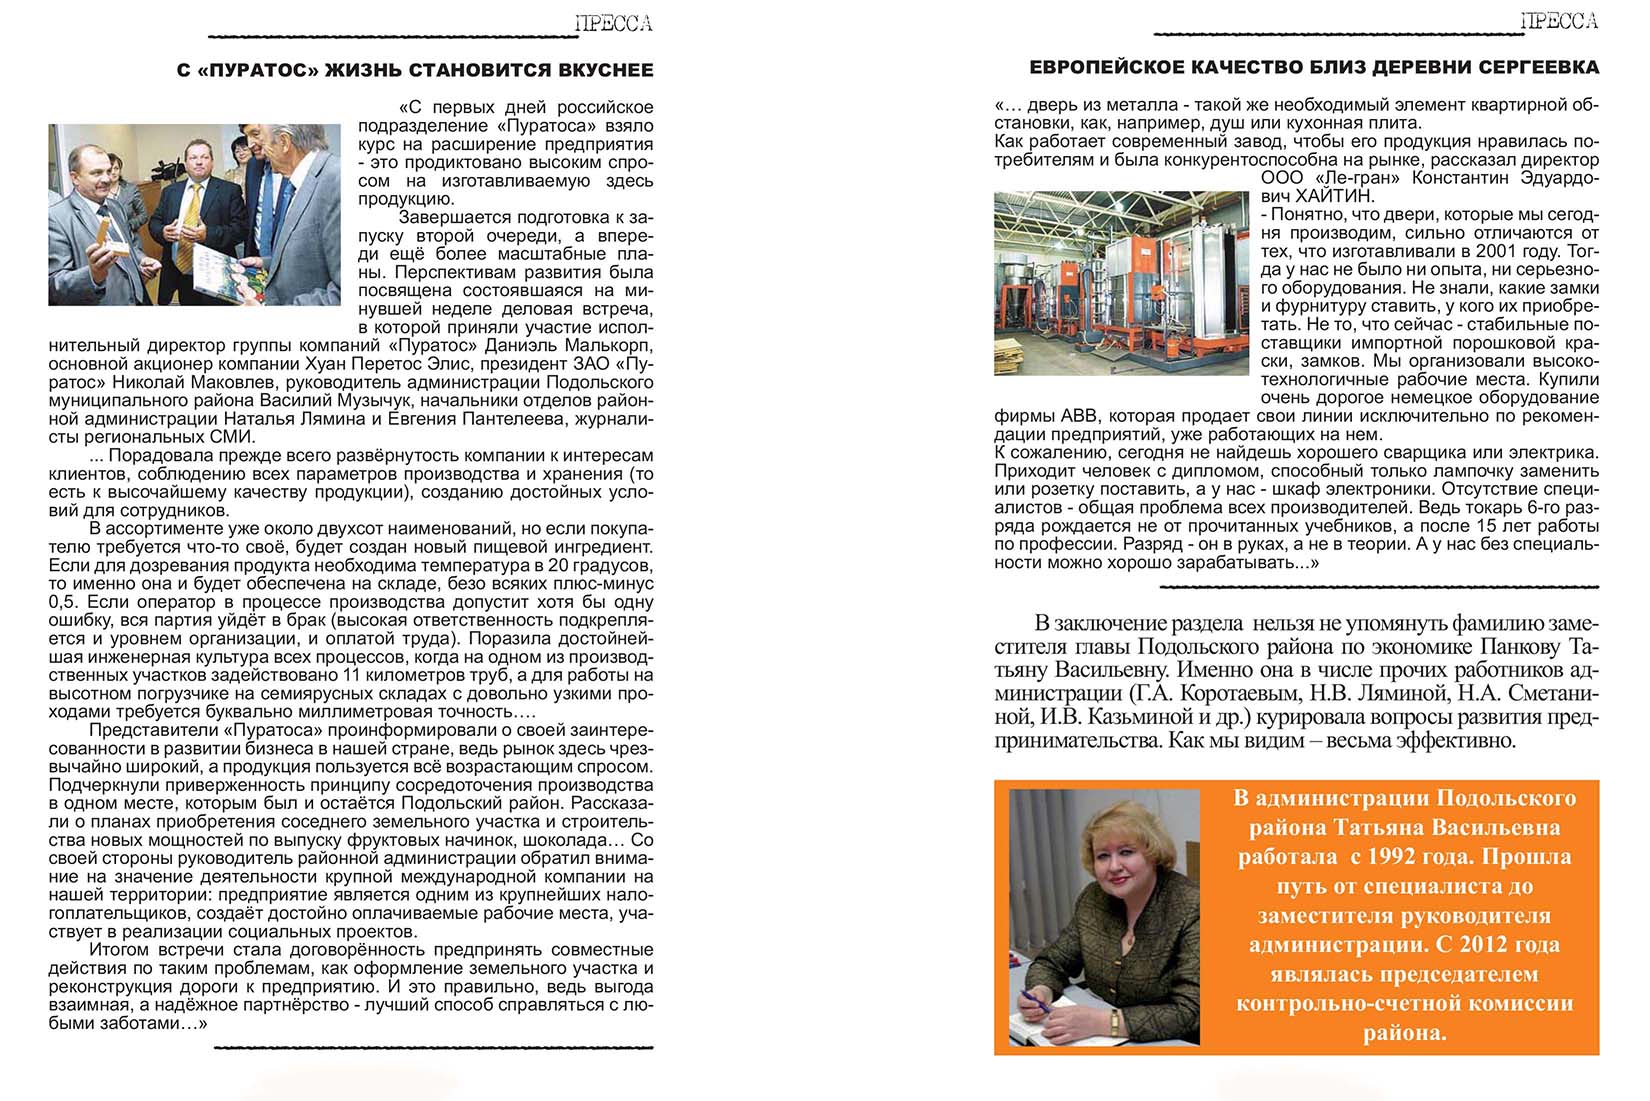 Промышленность и предпринимательство в Подольском районе